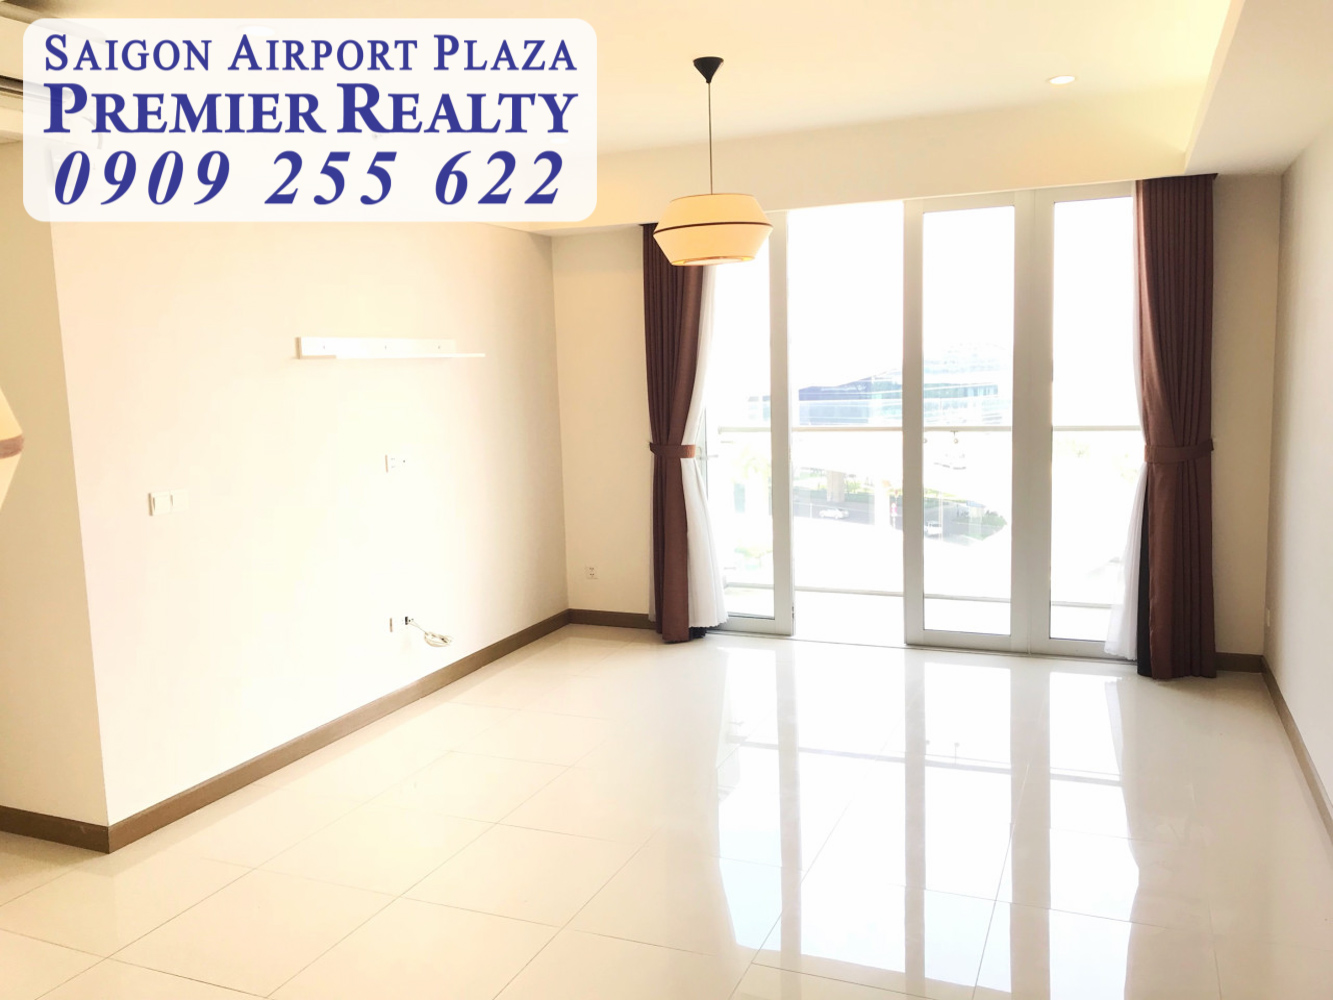 Saigon Airport Plaza Q.Tân Bình_Cho thuê gấp Căn hộ chung cư 3PN - 125m2, tầng trung. Hotline PKD 0909 255 622 xem nhà ngay